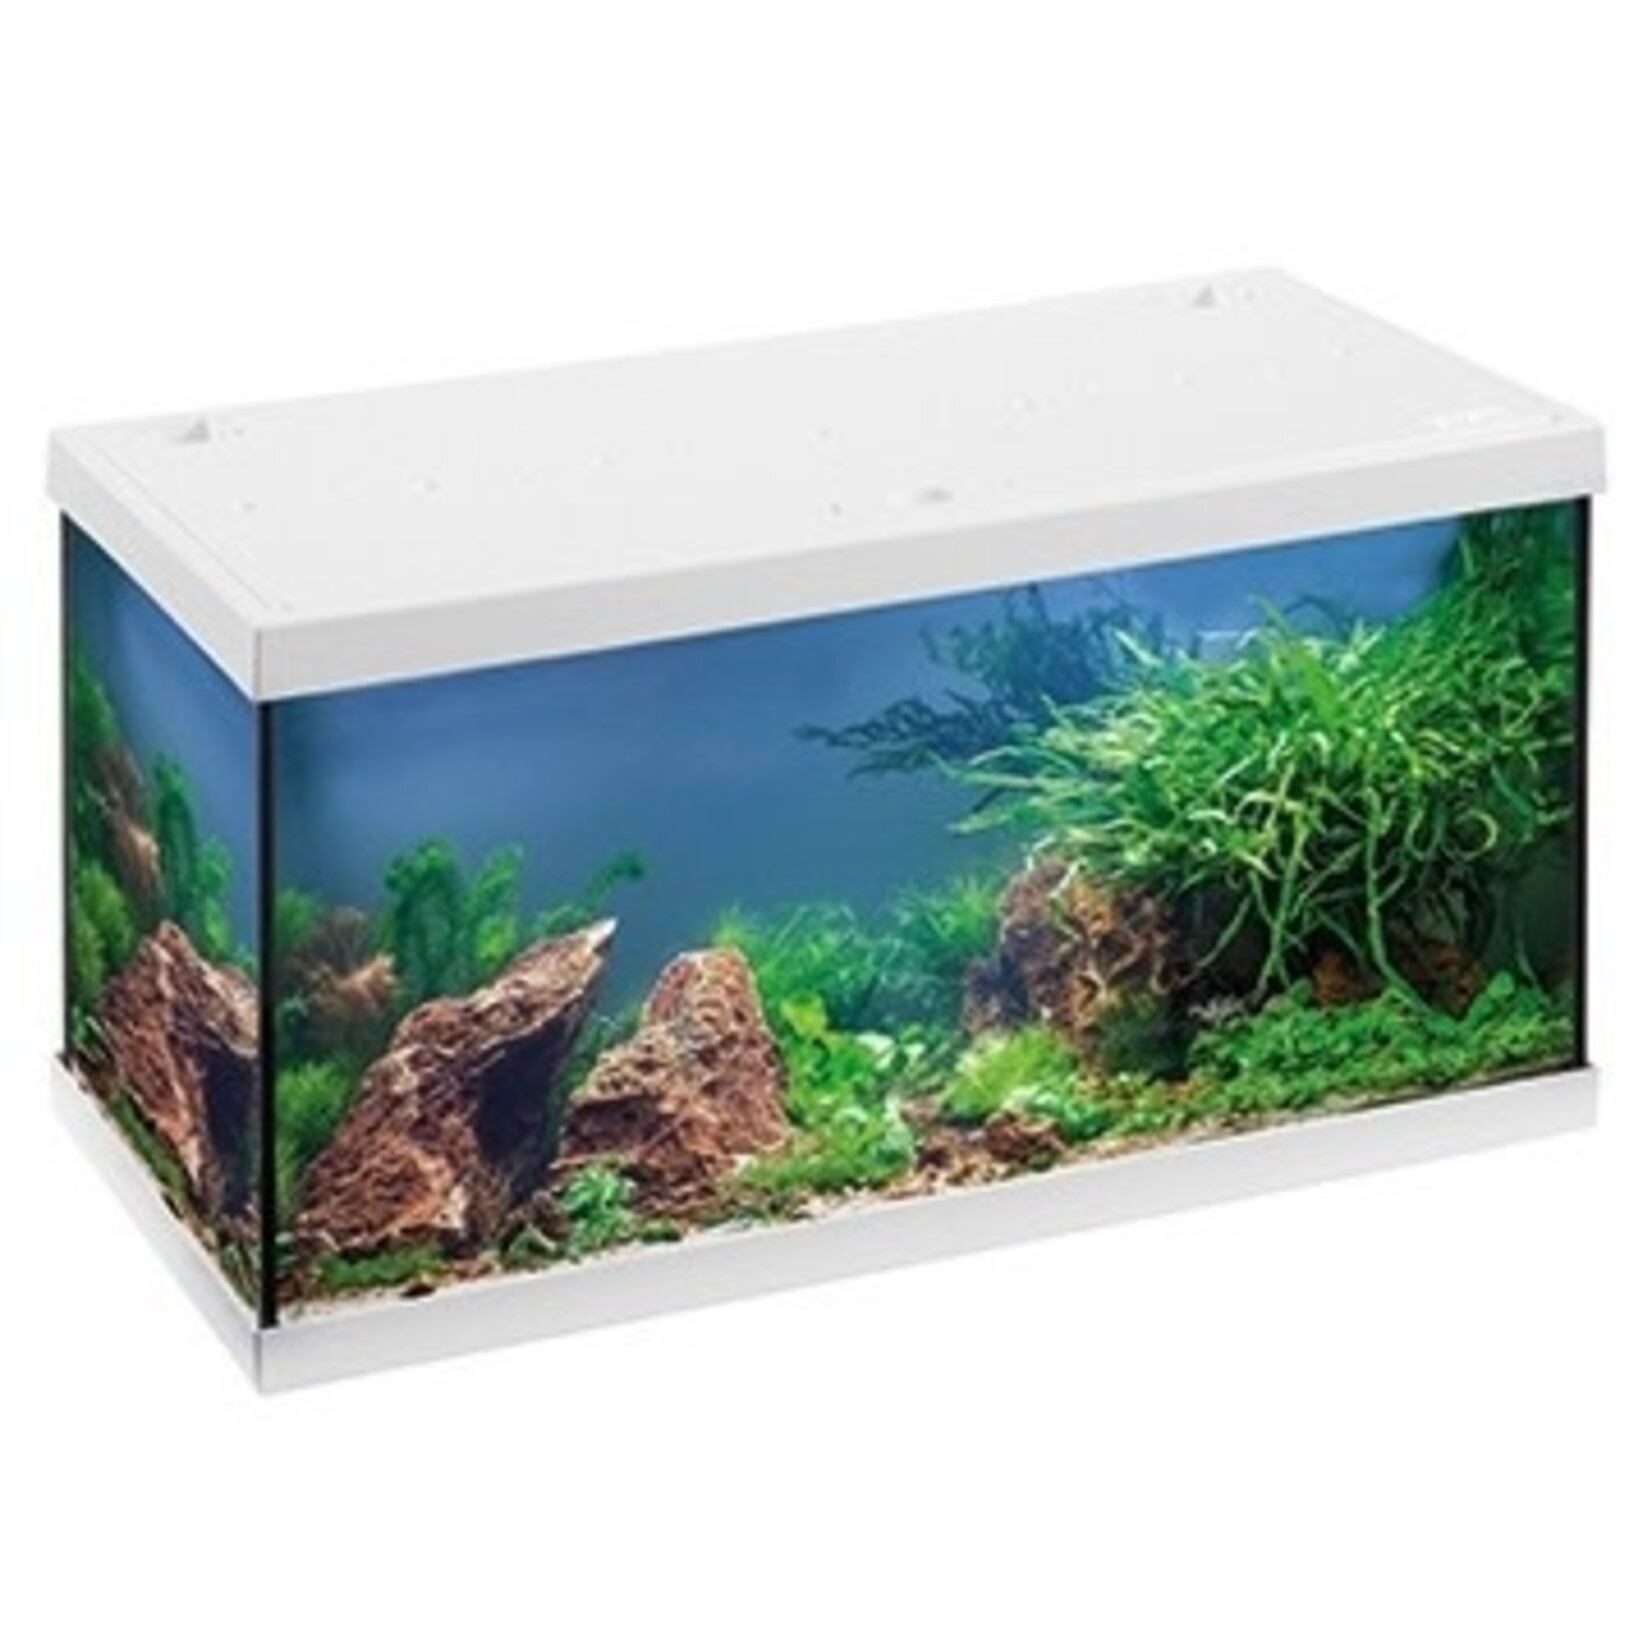 Eheim aquarium aquastar 54 wit 60x30x36 cm led